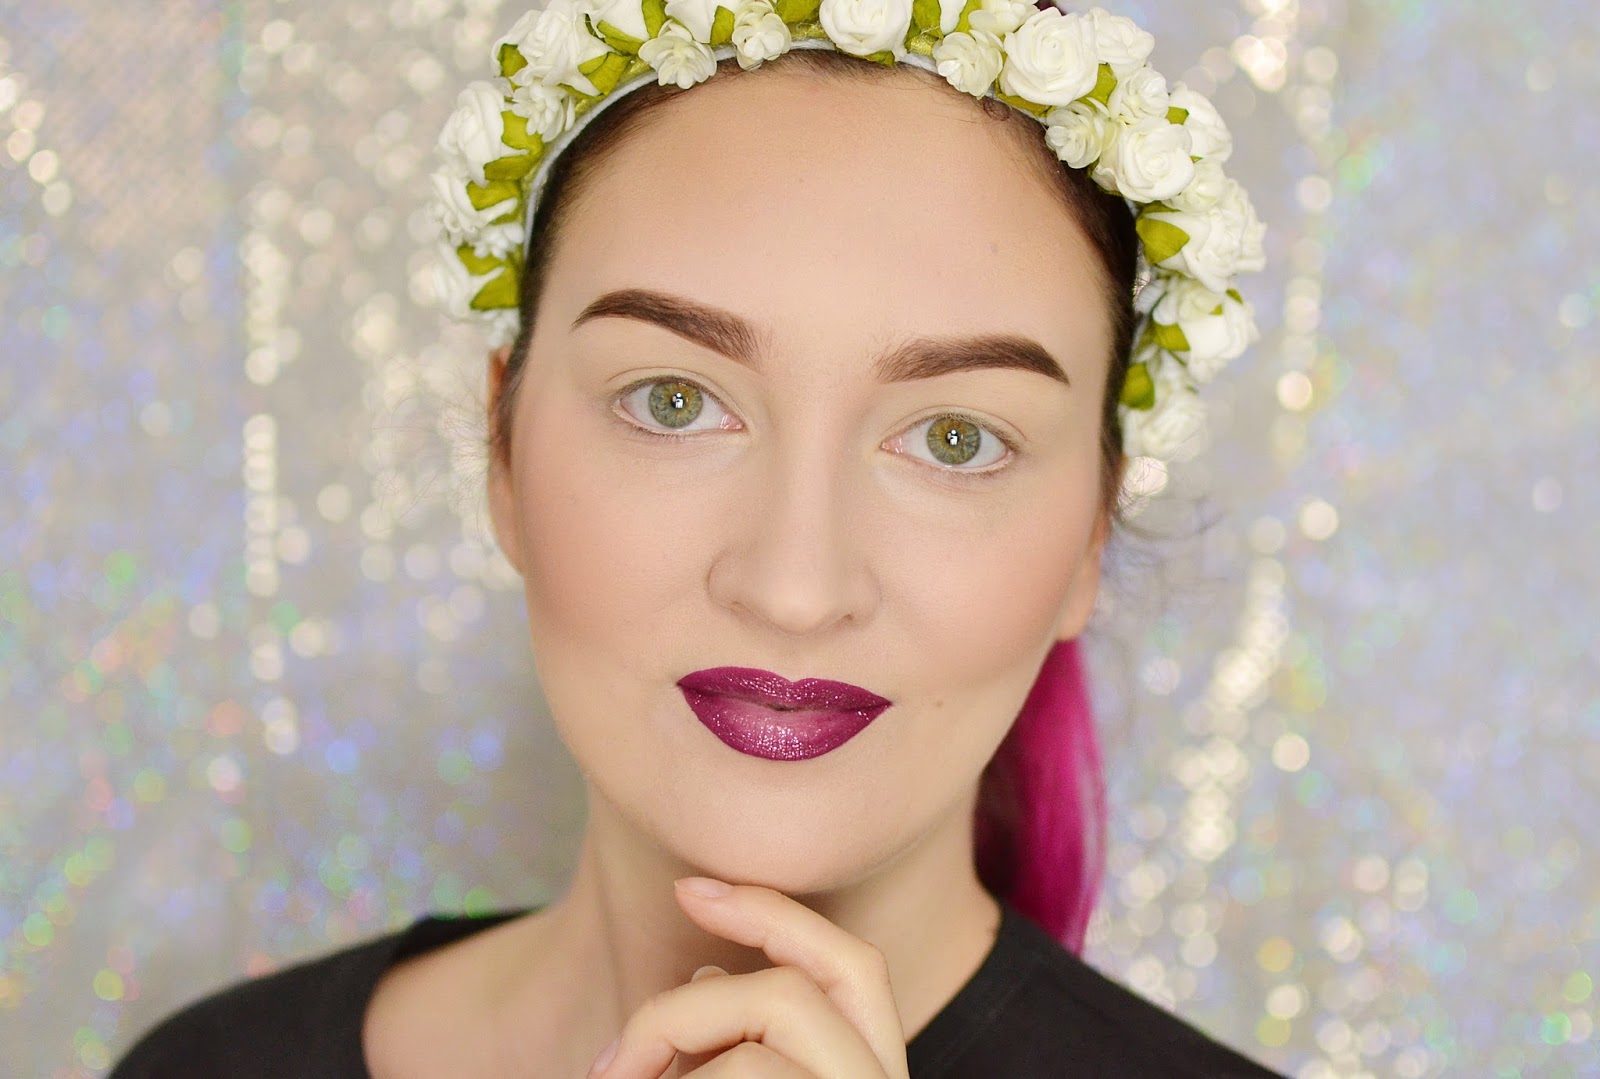 ROZŚWIETLONA CERA I BROKATOWE USTA Z EFEKTEM OMBRE | #TUTORIAL | Agata Welpa MakeUp Blog Beauty- najbardziej kolorowy blog o makijażu.